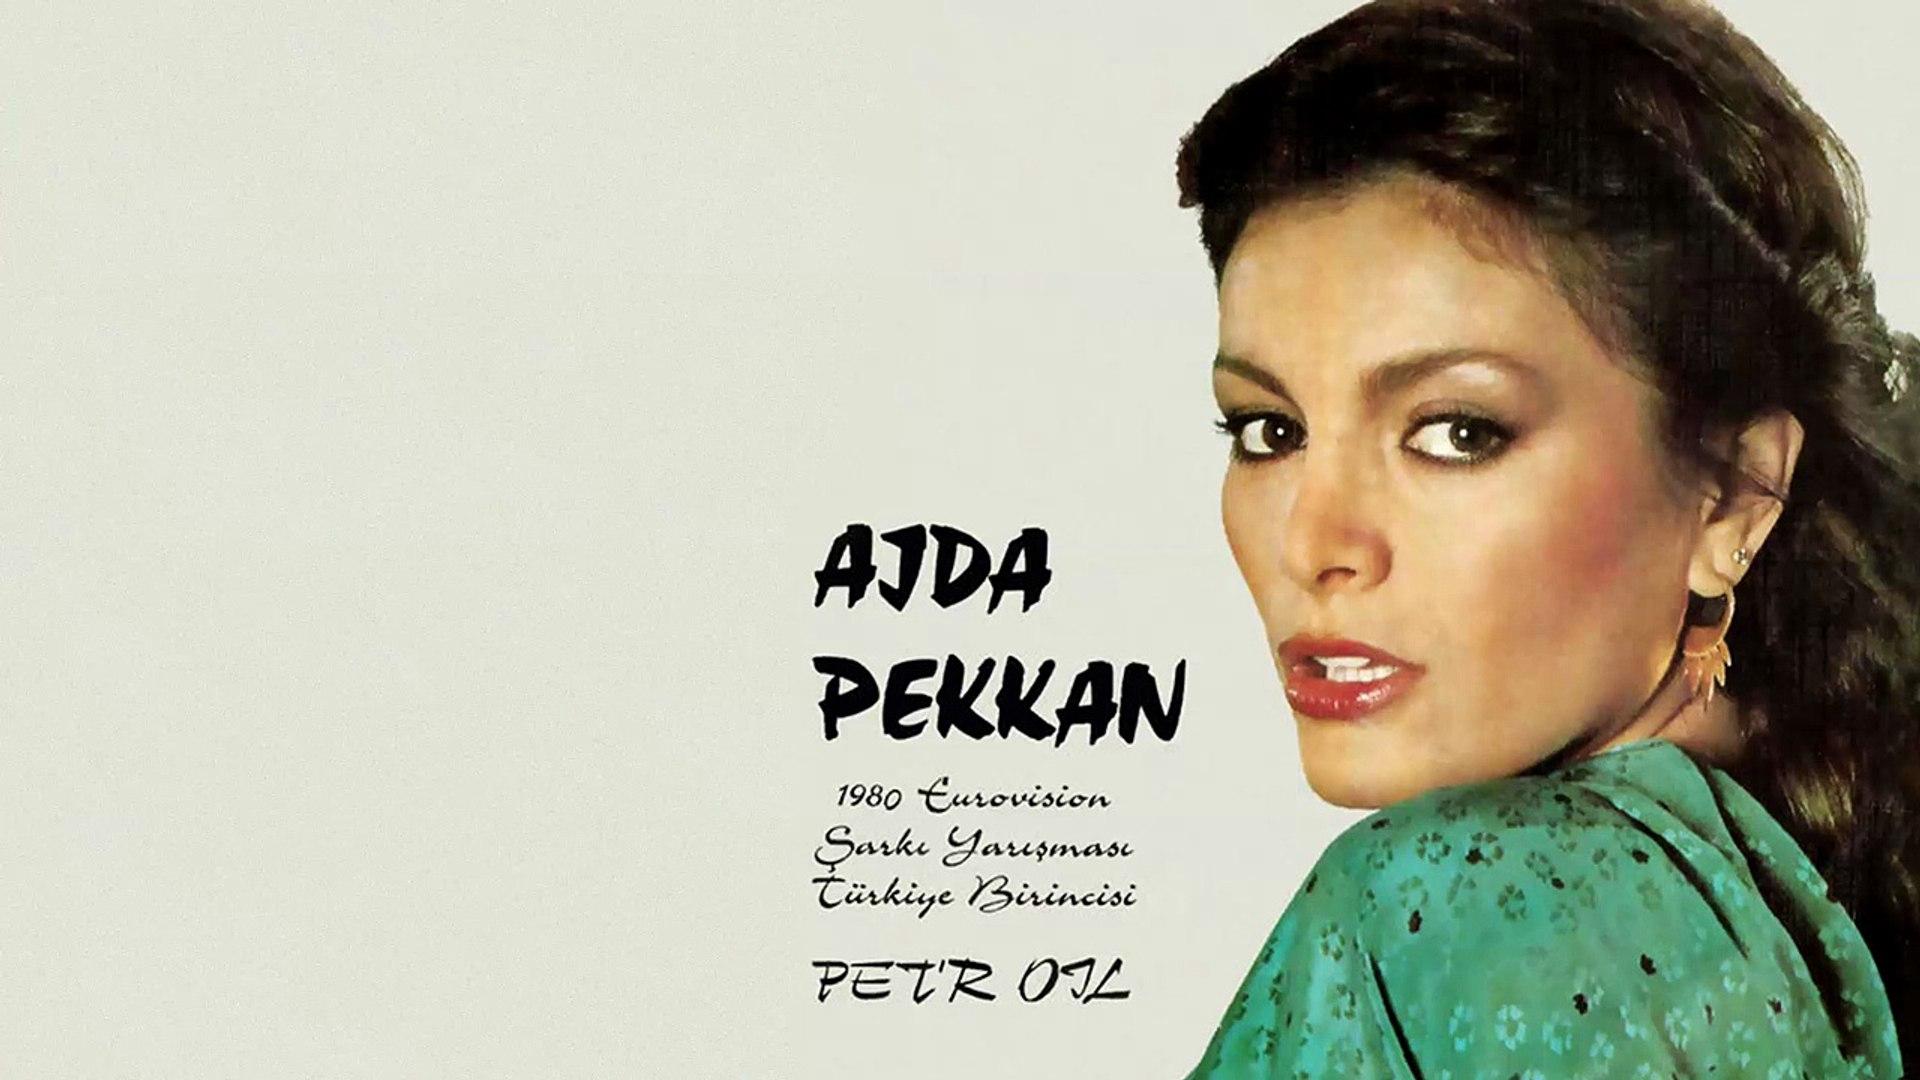 Ajda Pekkan Wallpapers